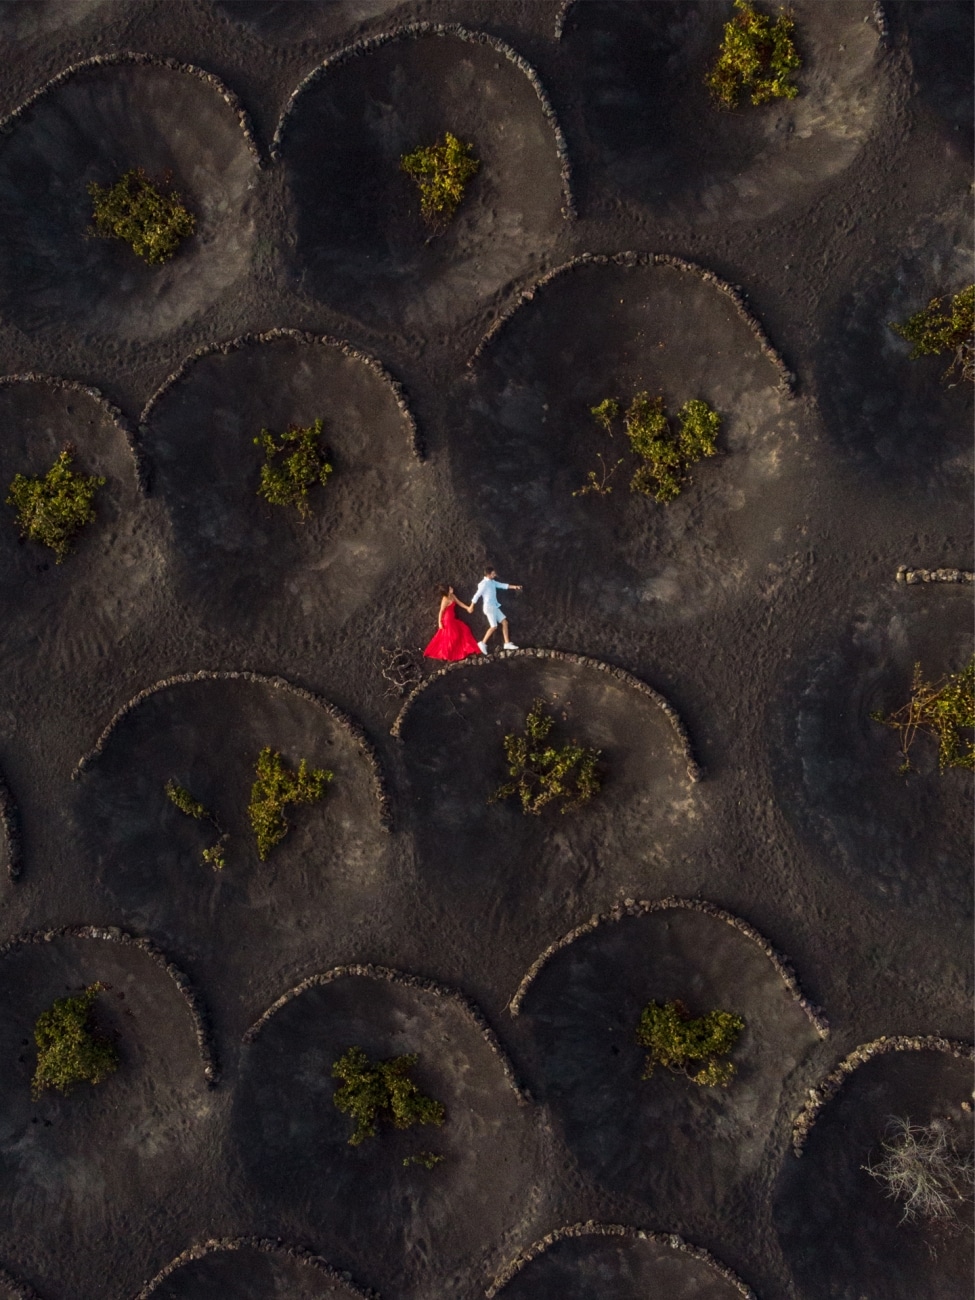 En la categoría de Bodas, el segundo puesto ha sido para esta imagen de Fabián Ortiz que retrató a unos novios saltando entre los viñedos de La Geria en Lanzarote donde se produce vino dulce proveniente de vides plantadas en cultivas en tierras volcánicas. 